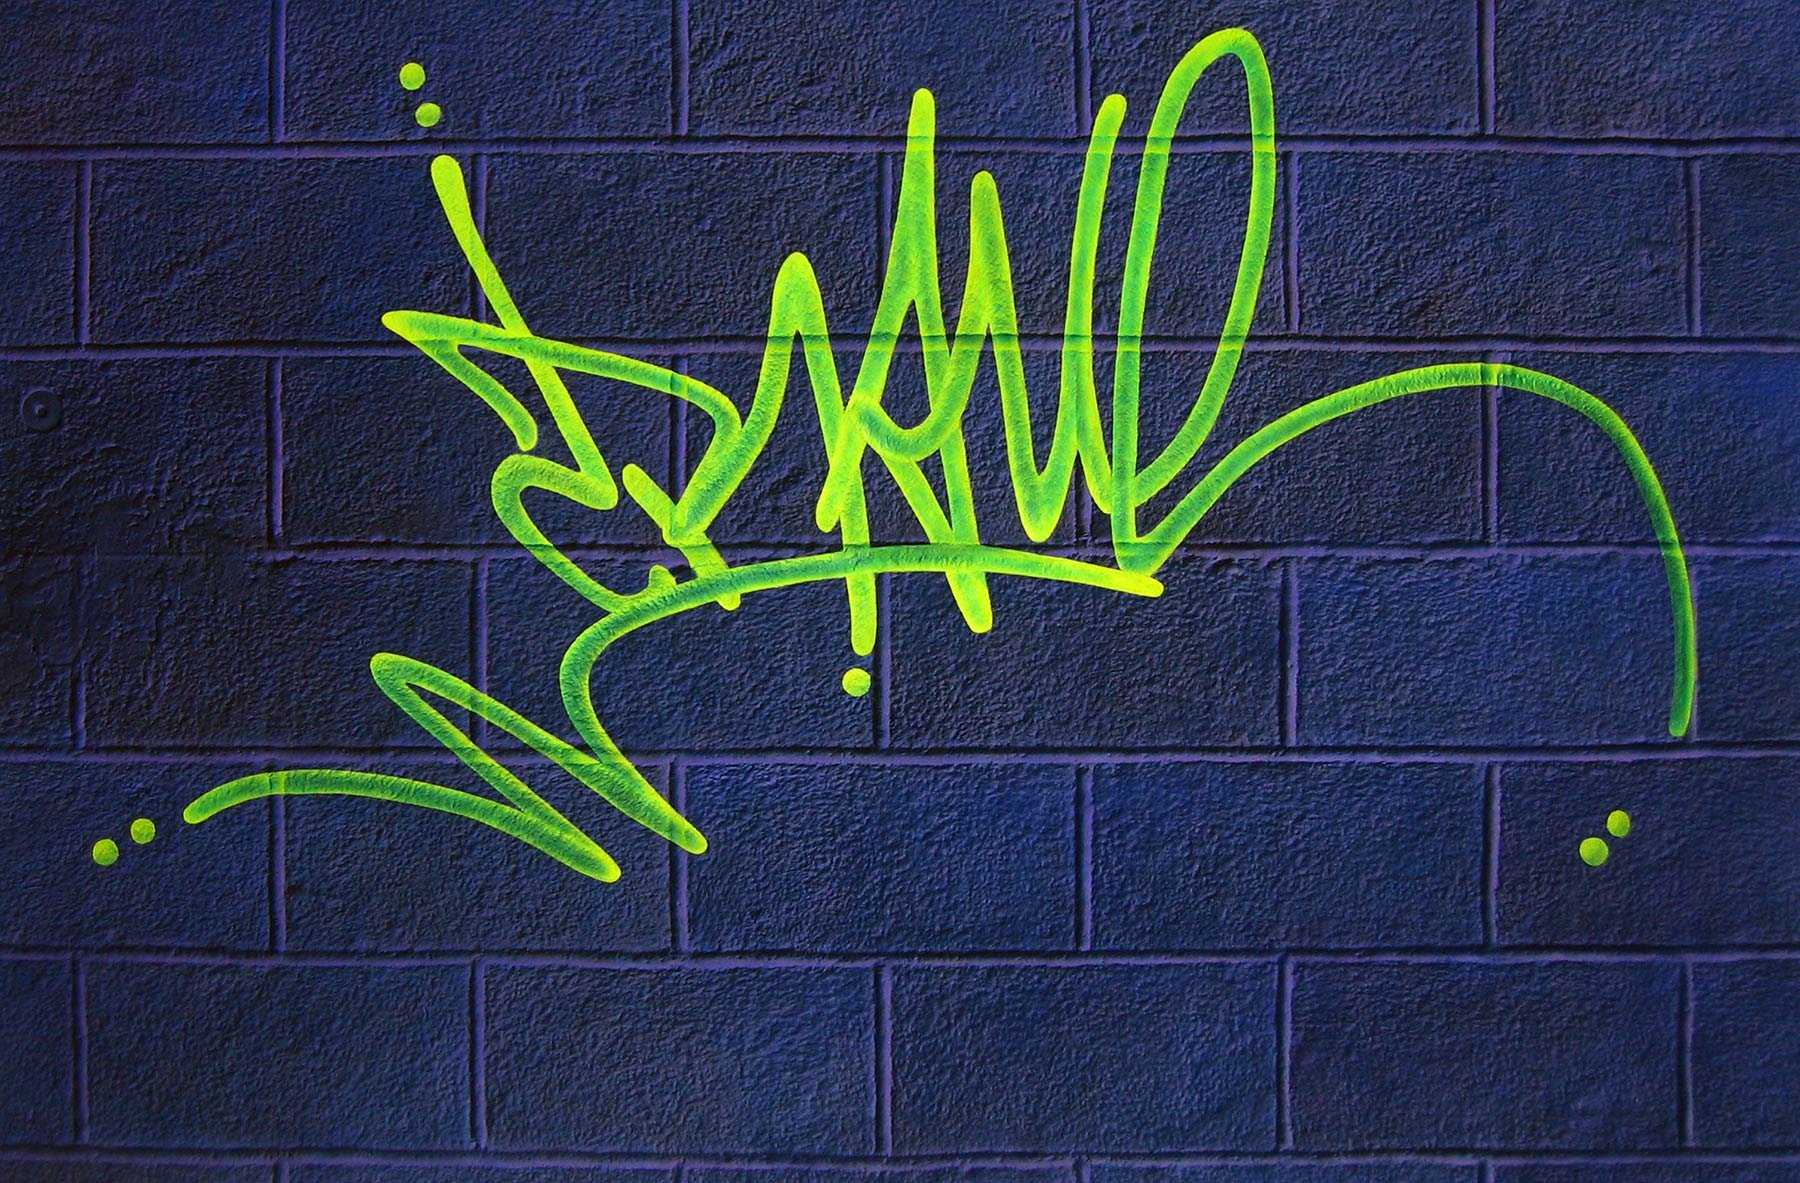 Теги граффити